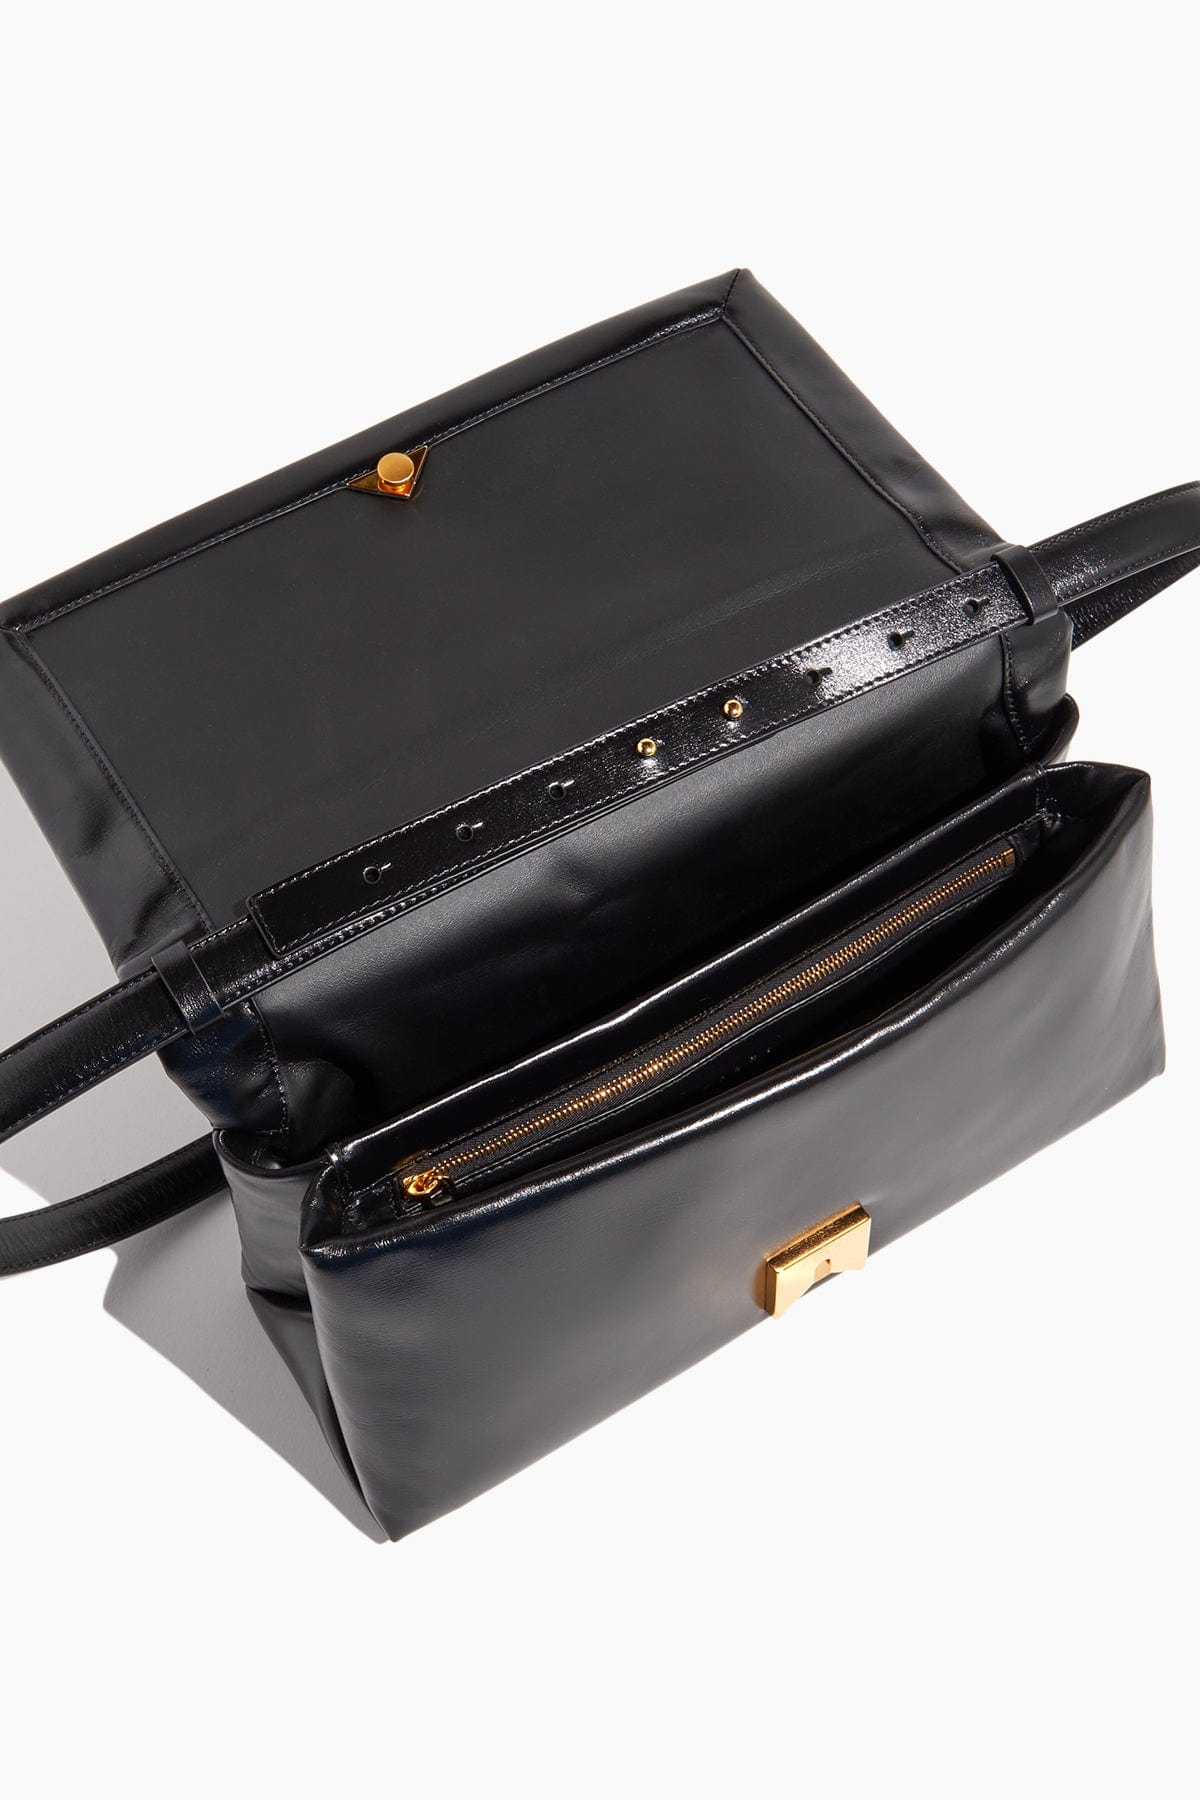 Marni Handbags Shoulder Bags Prisma Top Handle EW Bag in Black Marni Prisma Top Handle EW Bag in Black